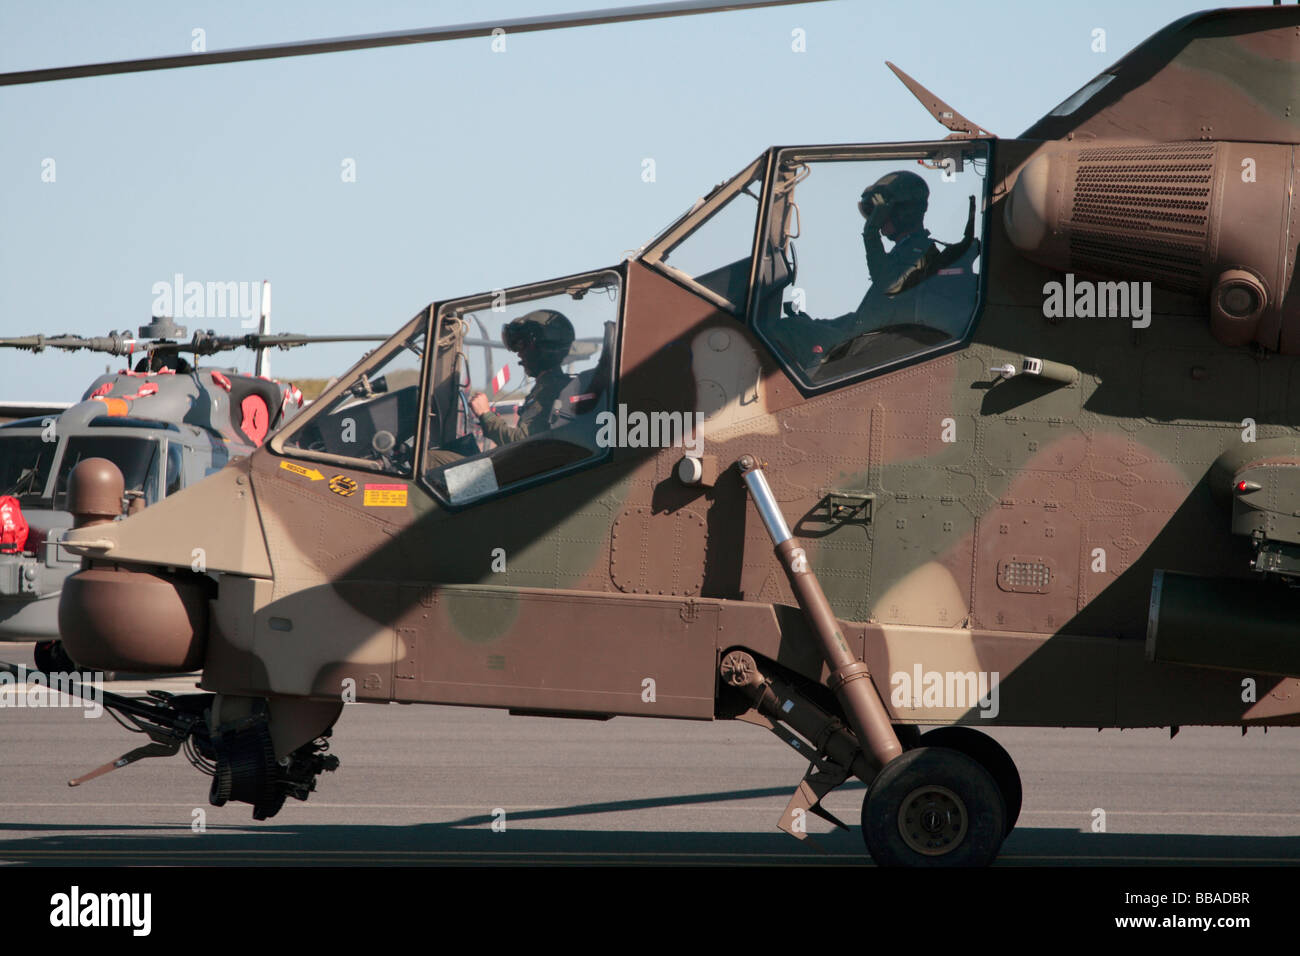 Ein South African Air Force Rooivalk Angriff Hubschrauber bei einer Flugshow auf Ysterplaat Air Force Base, Cape Town, Südafrika. Stockfoto